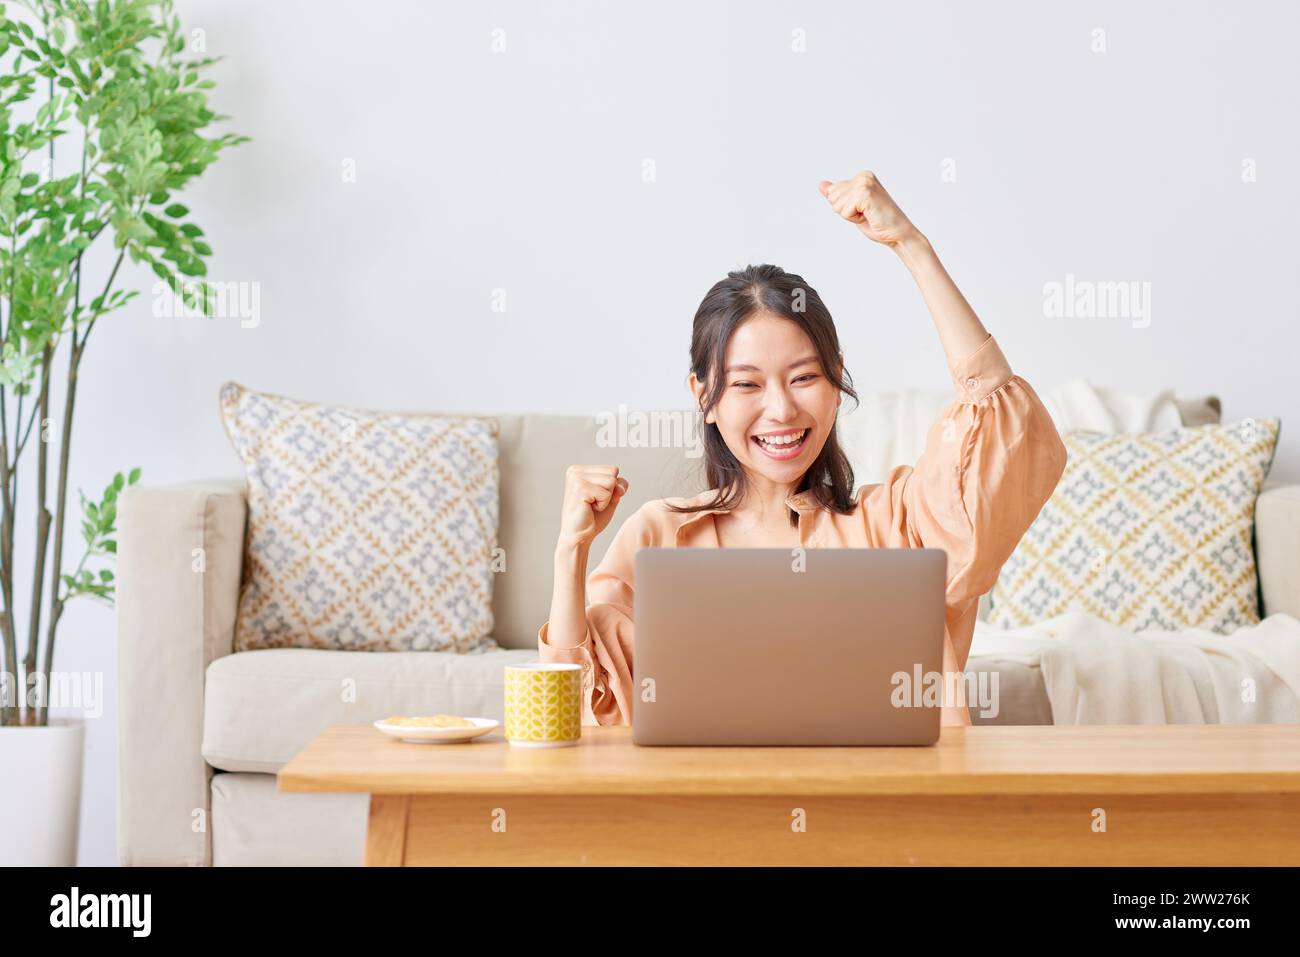 Une femme assise sur un canapé avec son ordinateur portable et levant les bras Banque D'Images